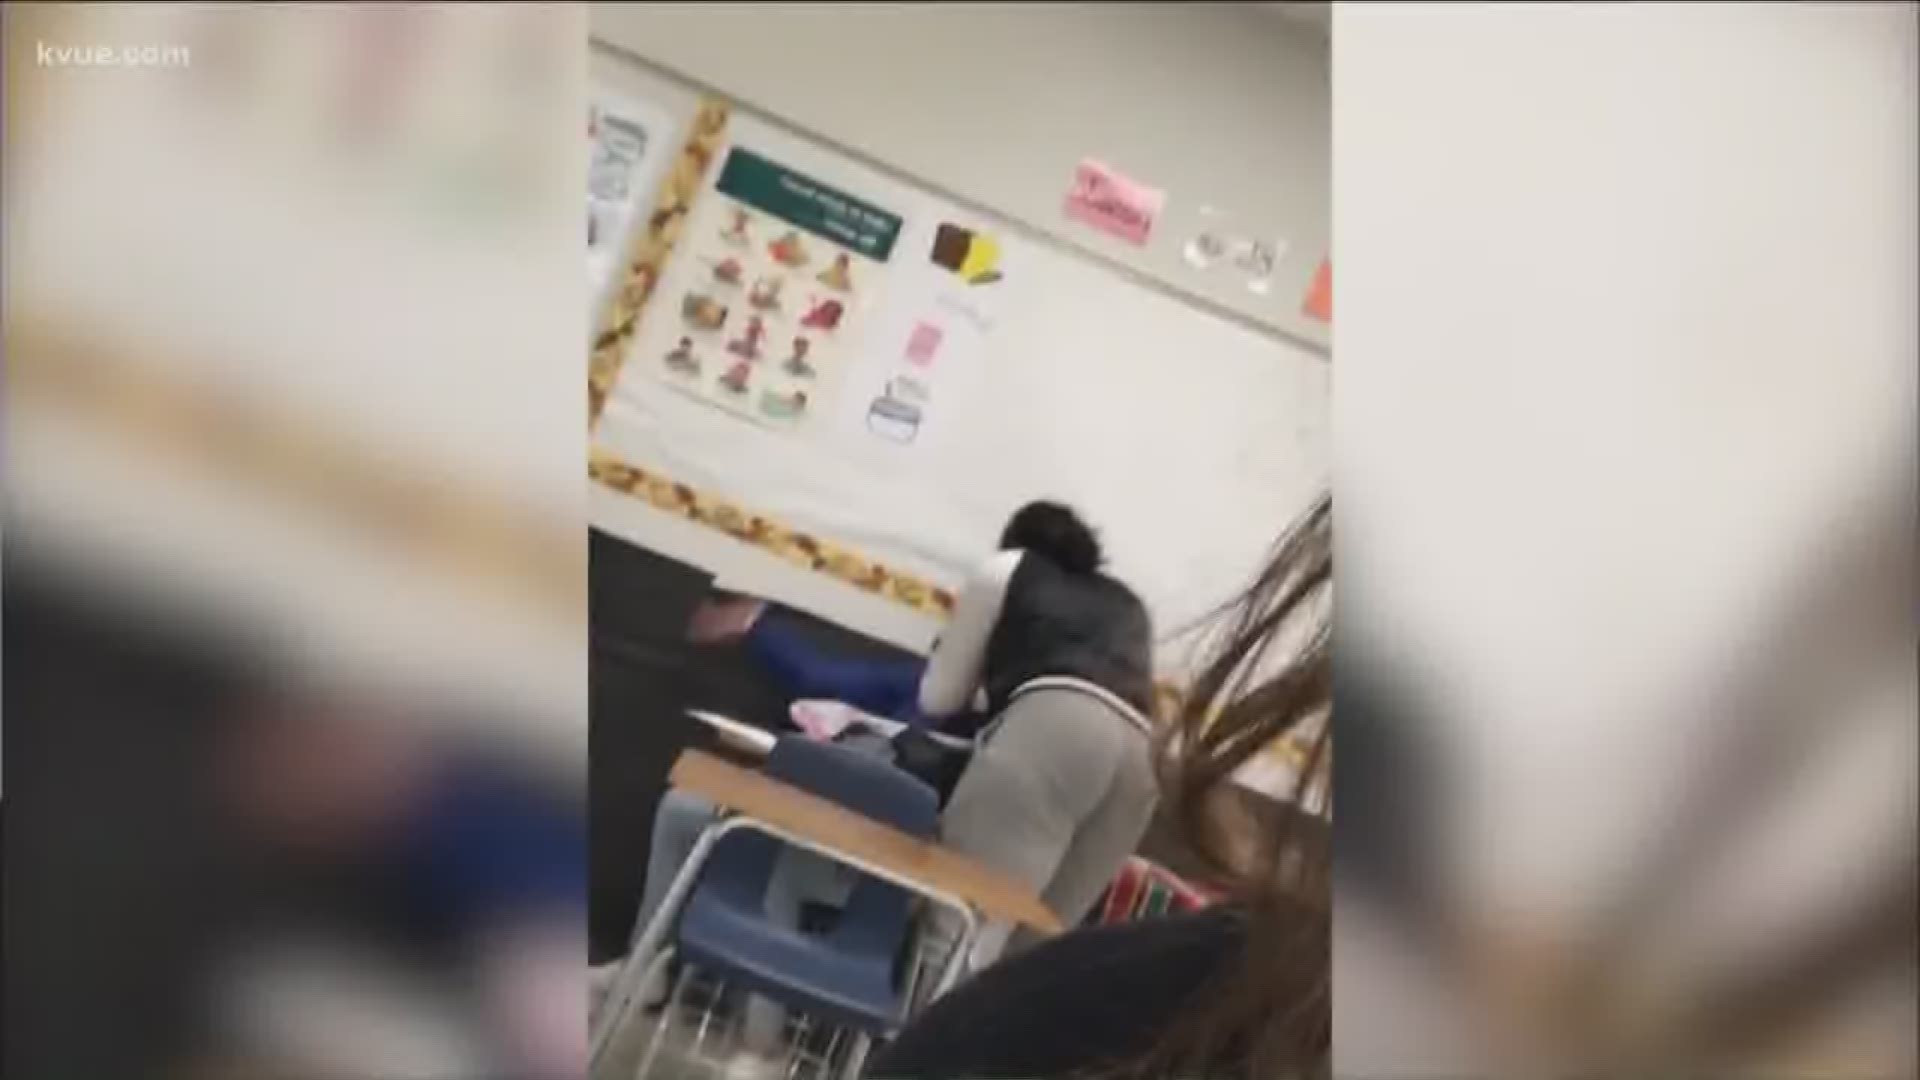 Teacher fired for onlyfans